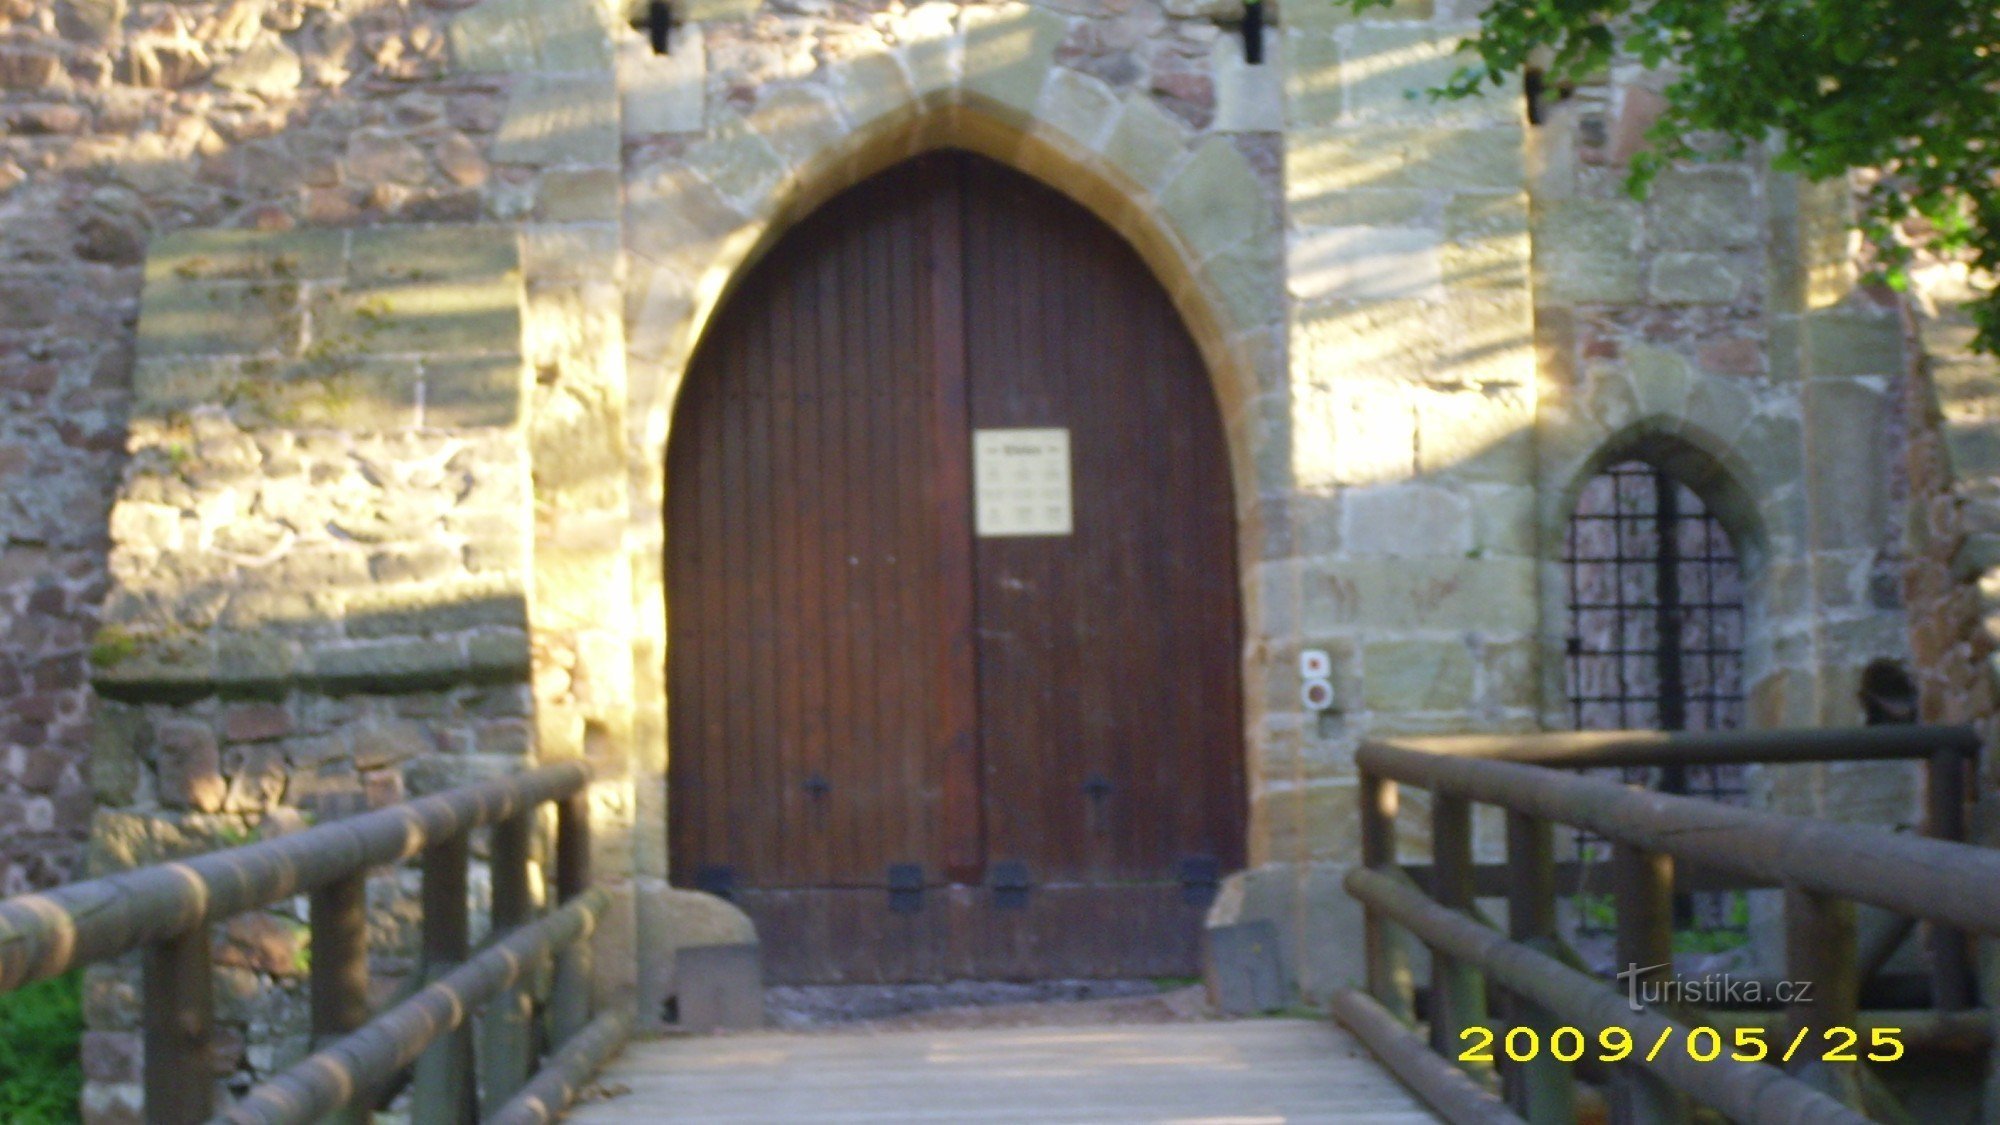 Входные ворота Литицкого замка